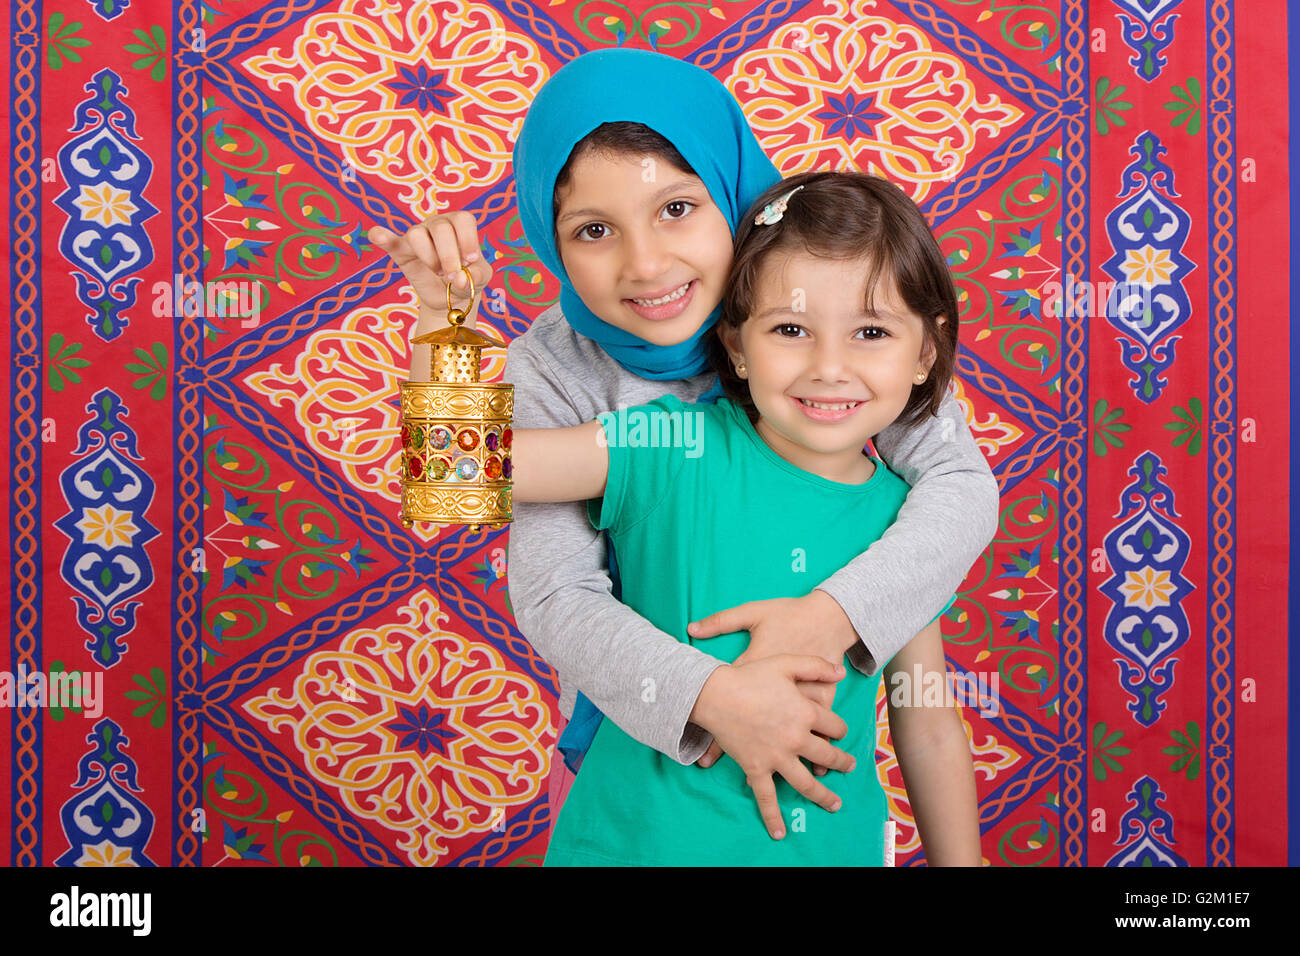 Famille heureuse dans le Ramadan - Deux soeurs musulmans célébrant le Ramadan Banque D'Images